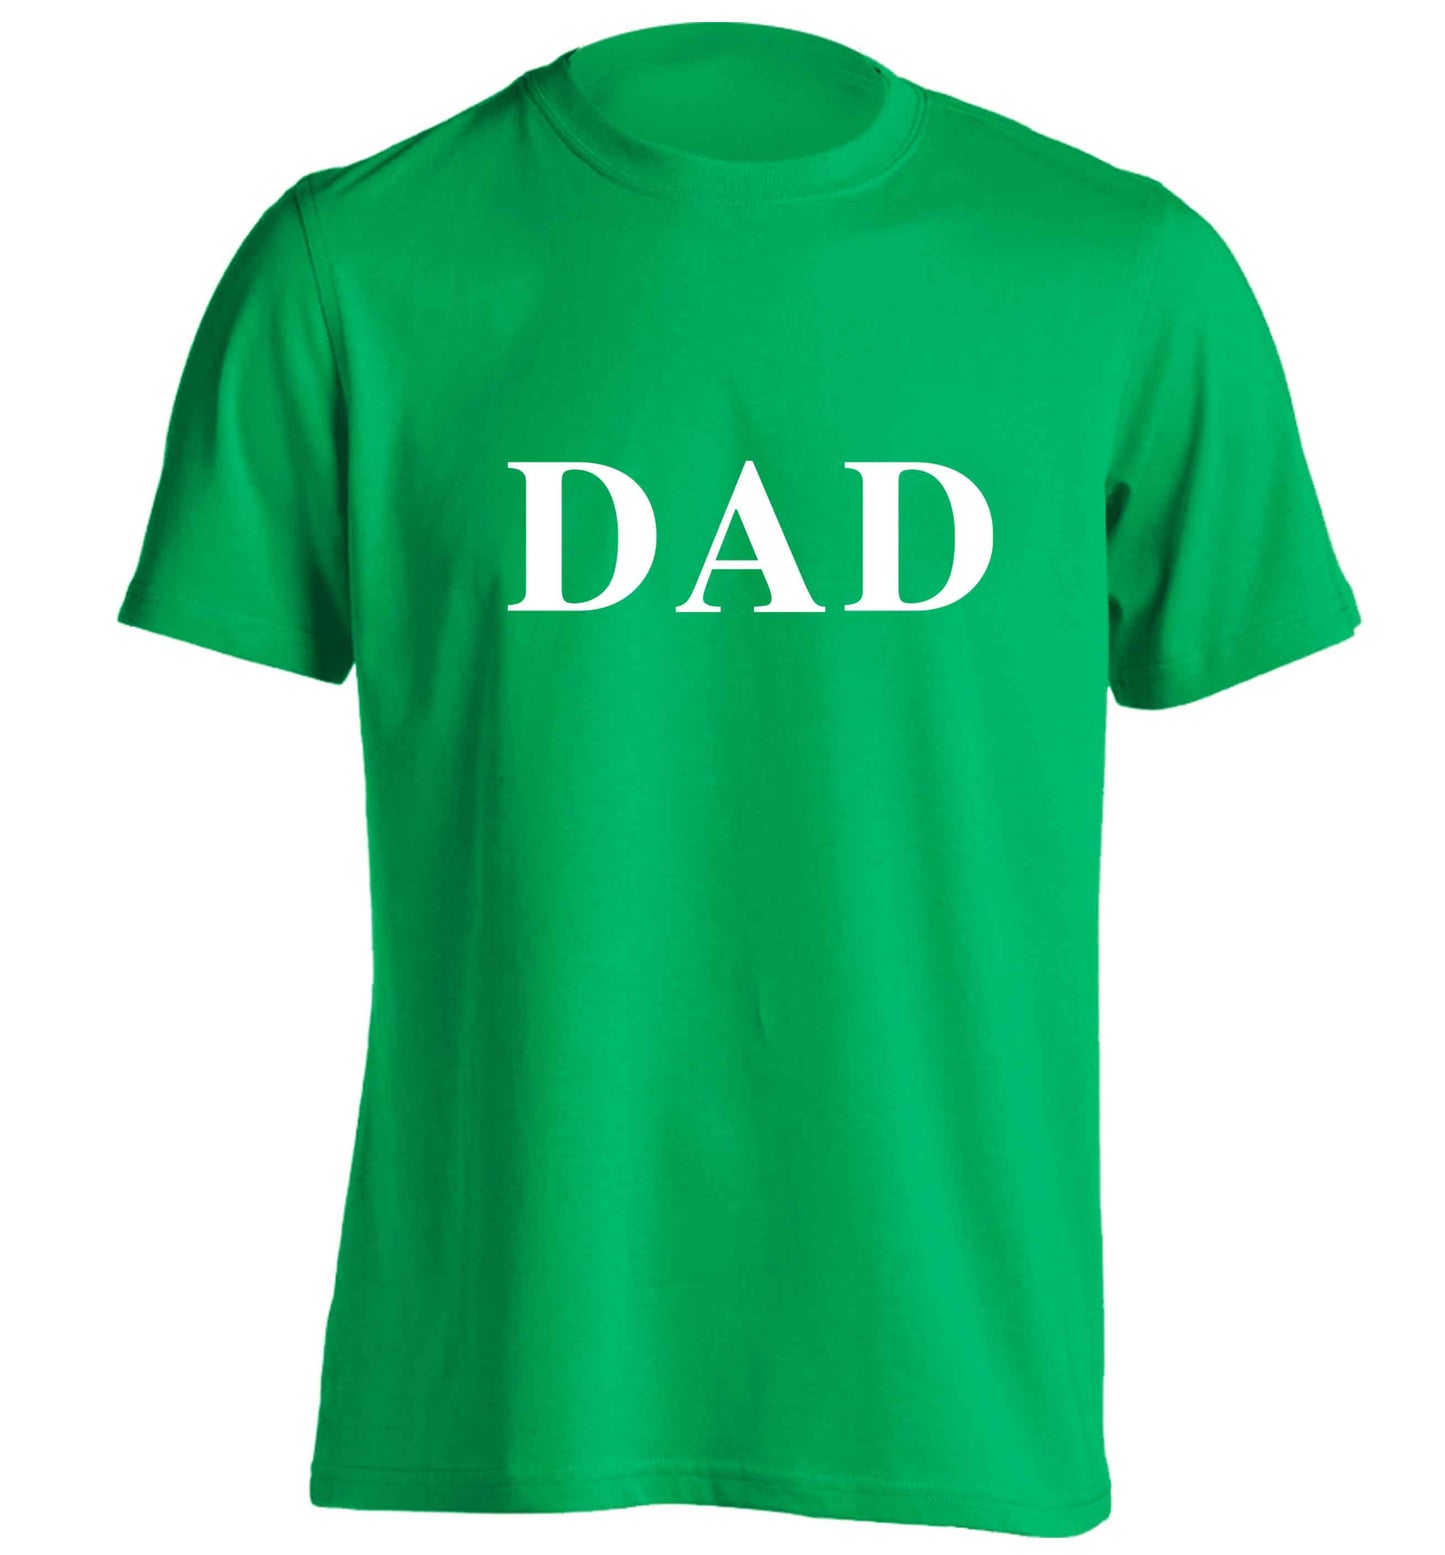 Dad adults unisex green Tshirt 2XL